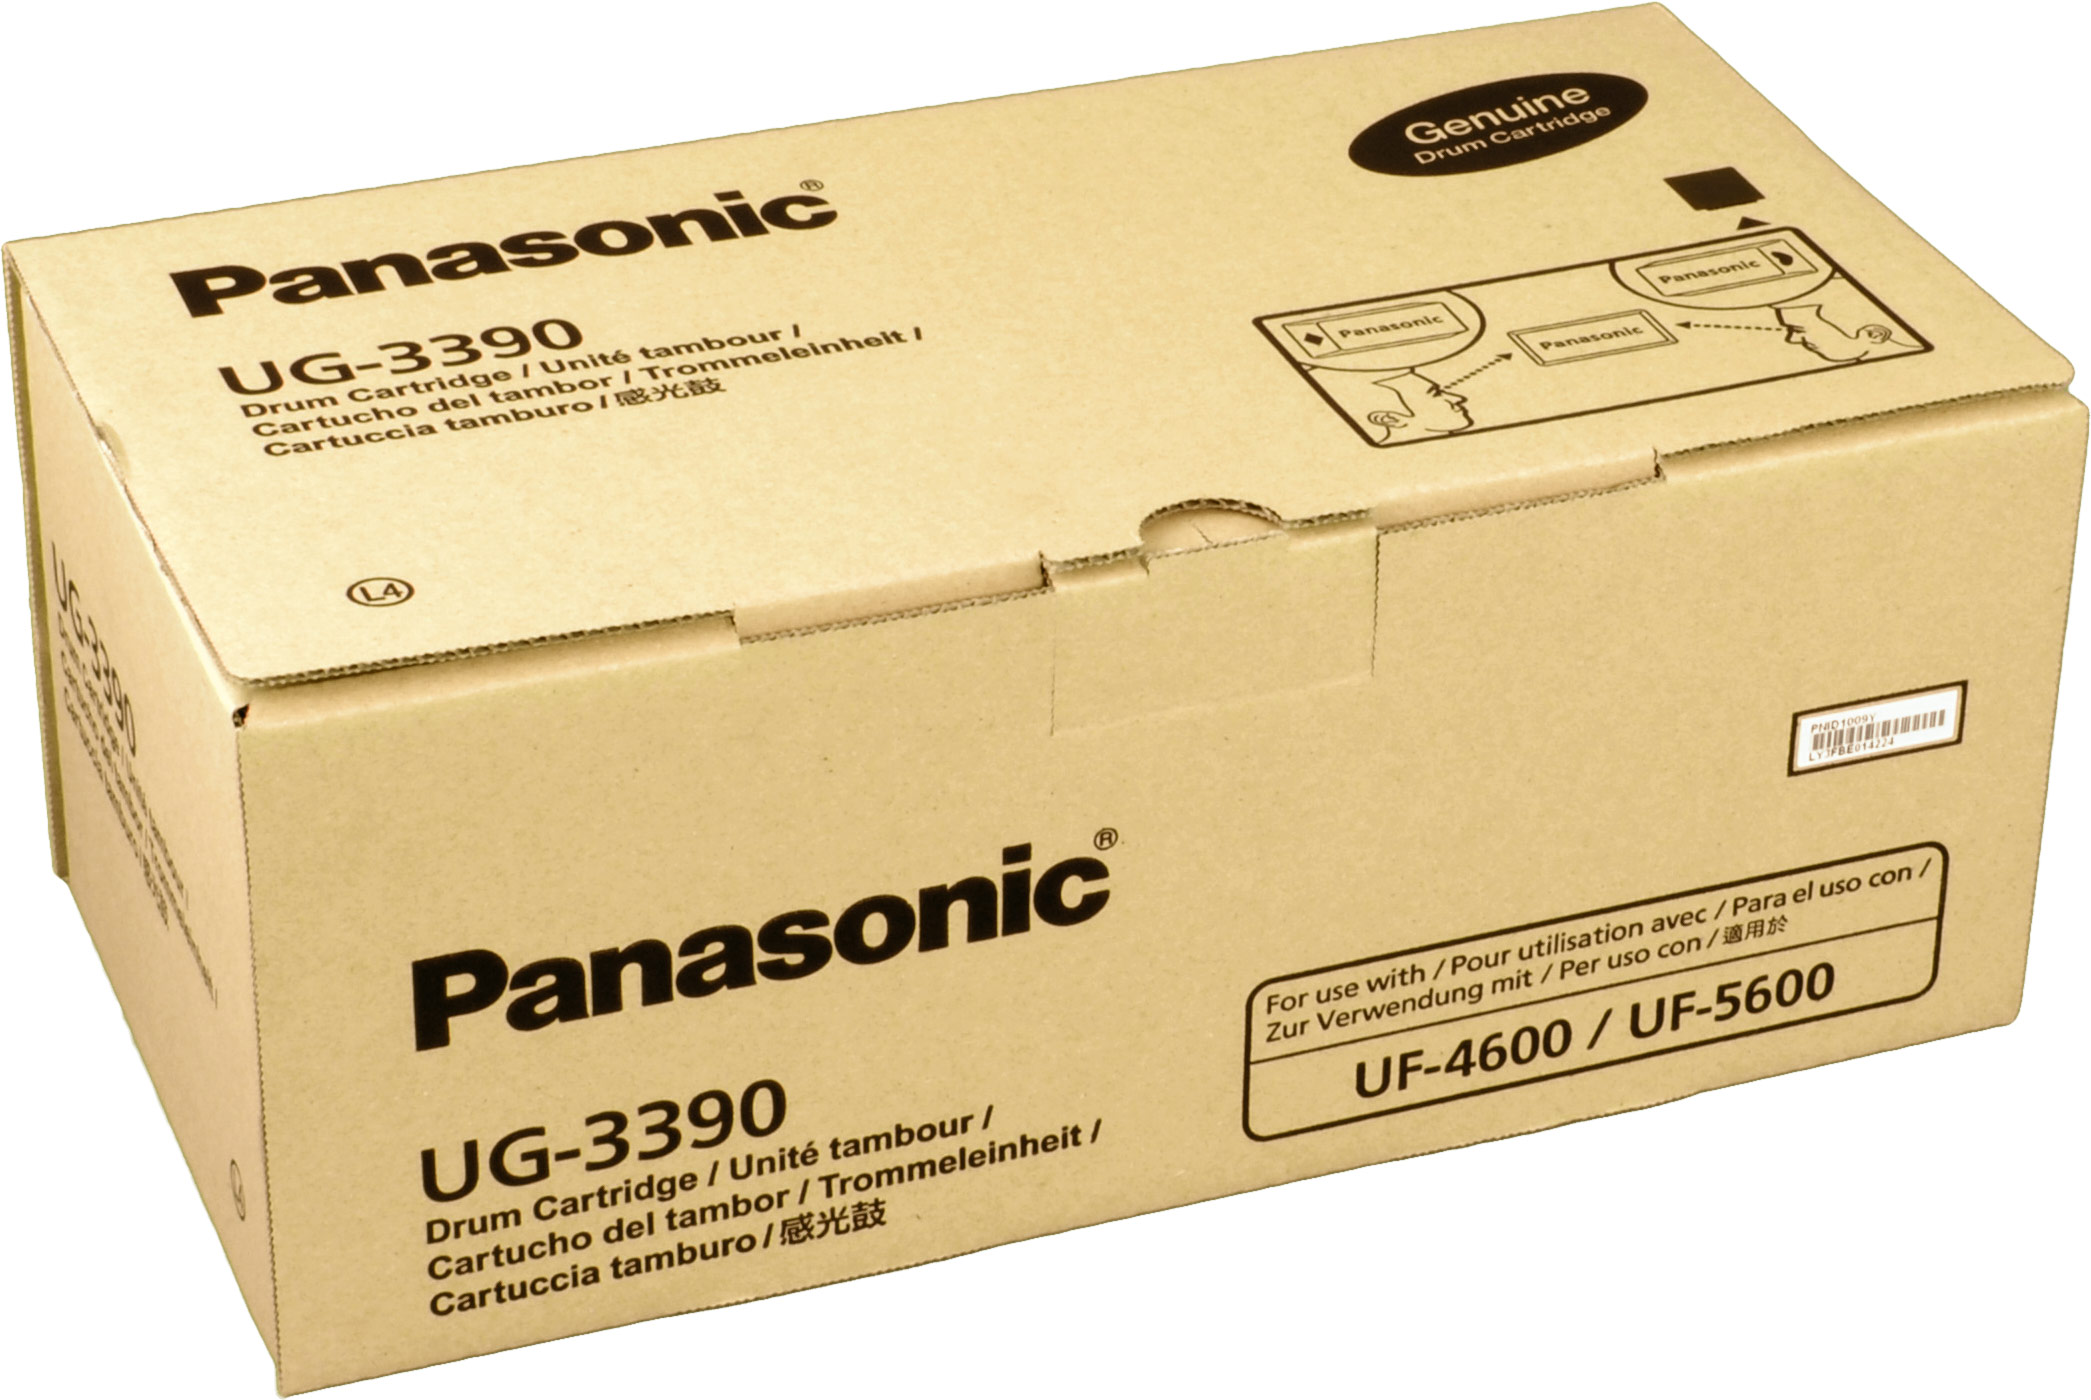 PANASONIC (UG-3390) UG-3390 Trommel schwarz